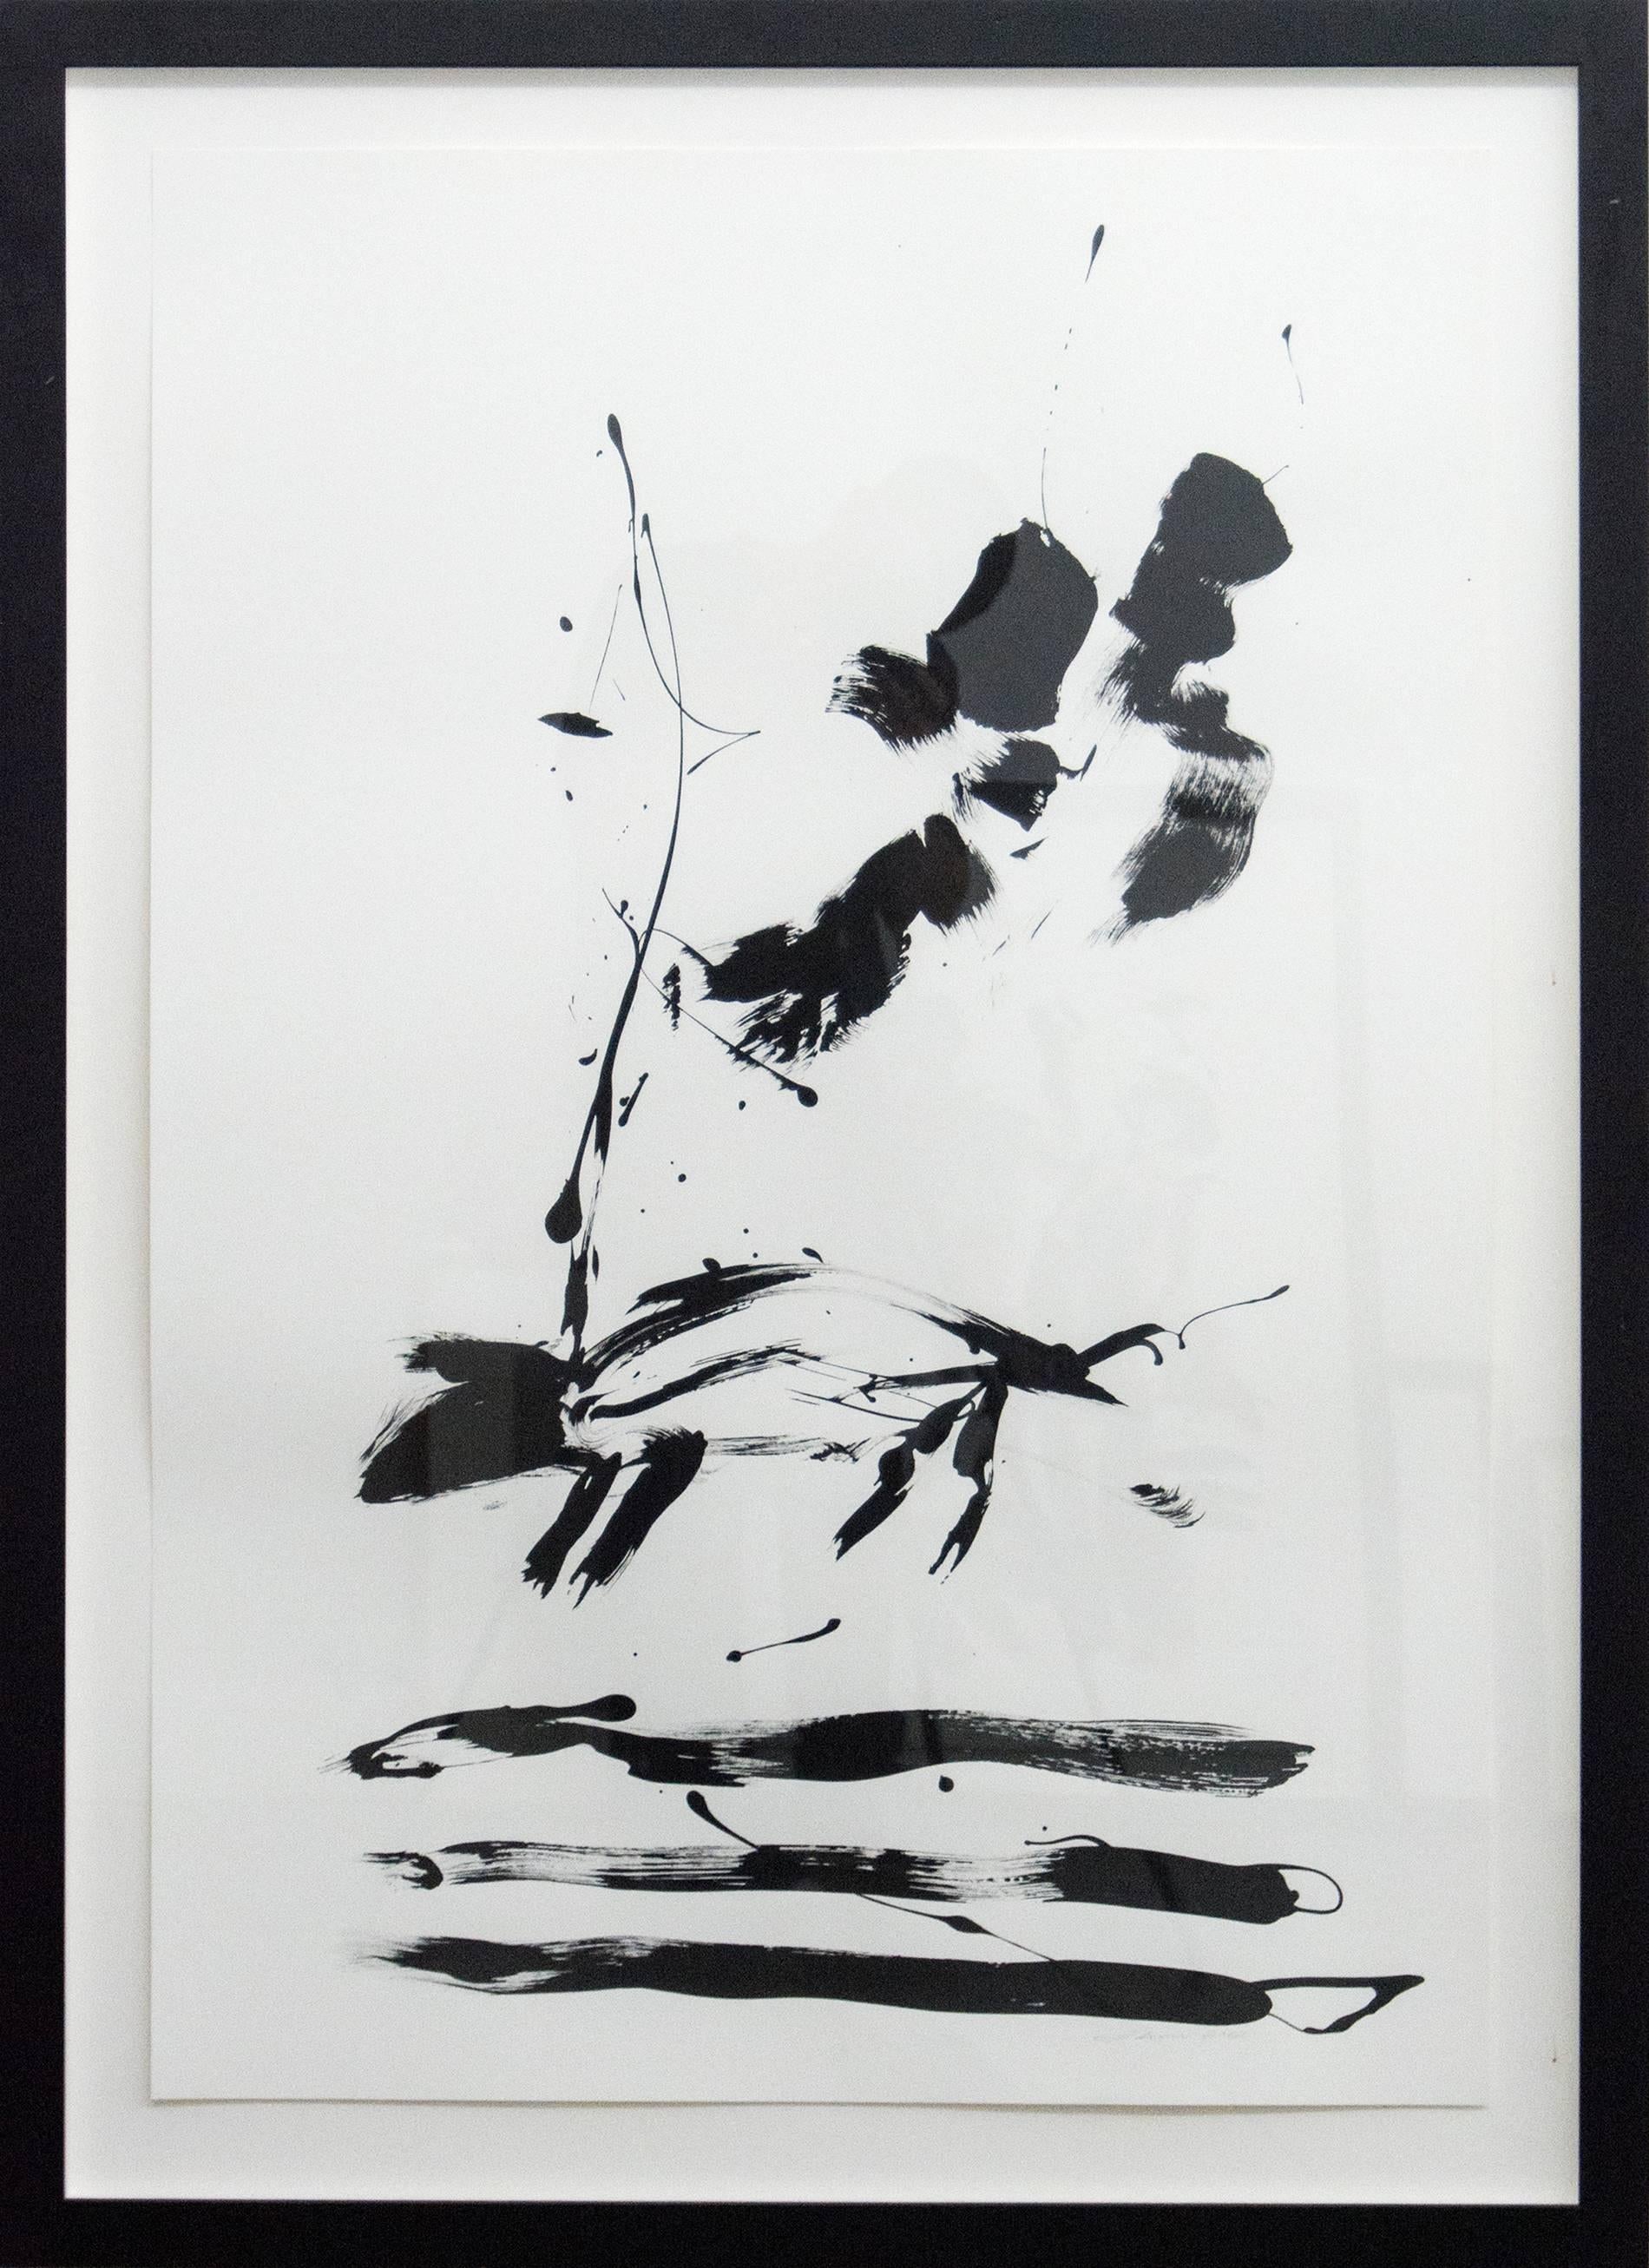 Lynne Fernie Animal Painting – Off the Leash – schwarz-weiß, minimalistisch, figurativ, abstrakt, Tinte auf Papier